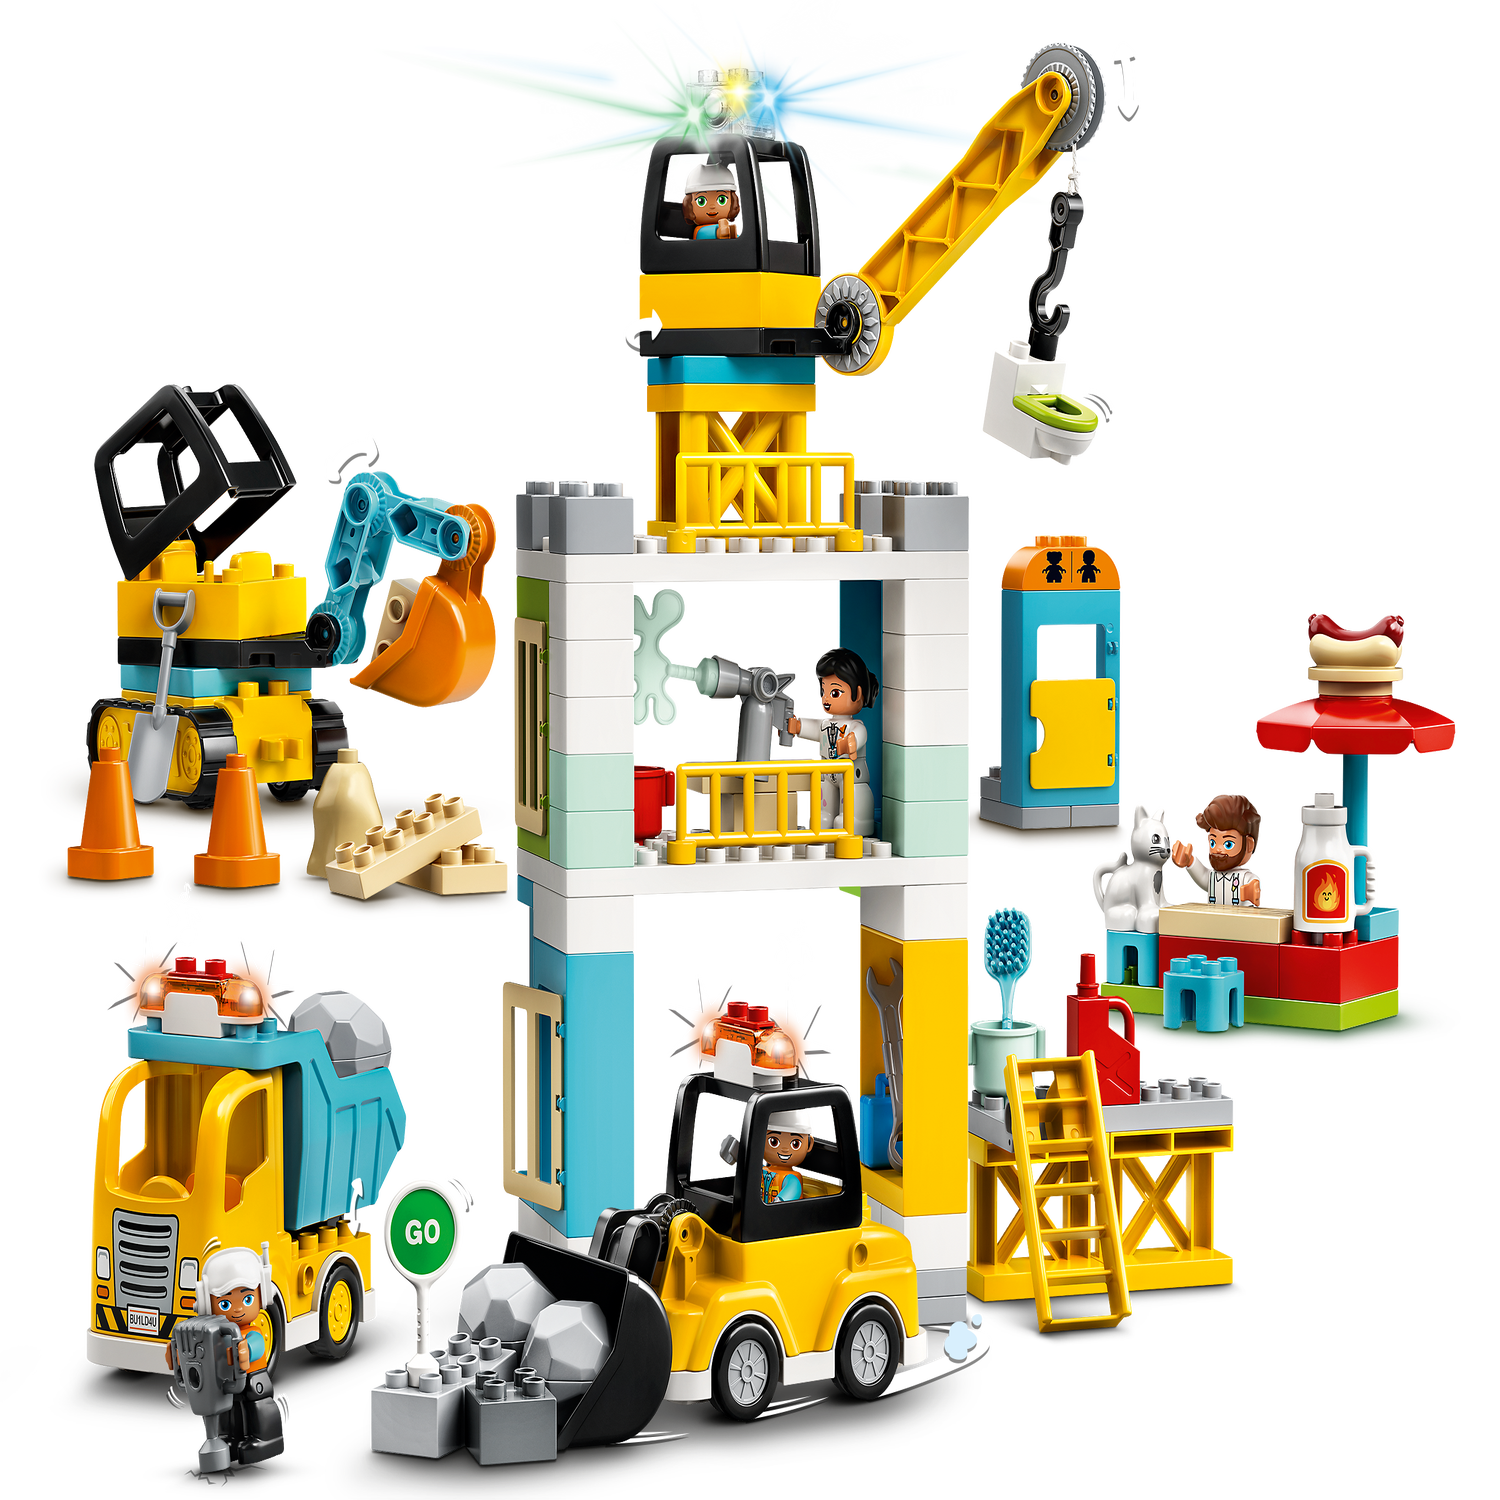 La grue et les engins de construction LEGO DUPLO (10933), 2 ans et plus